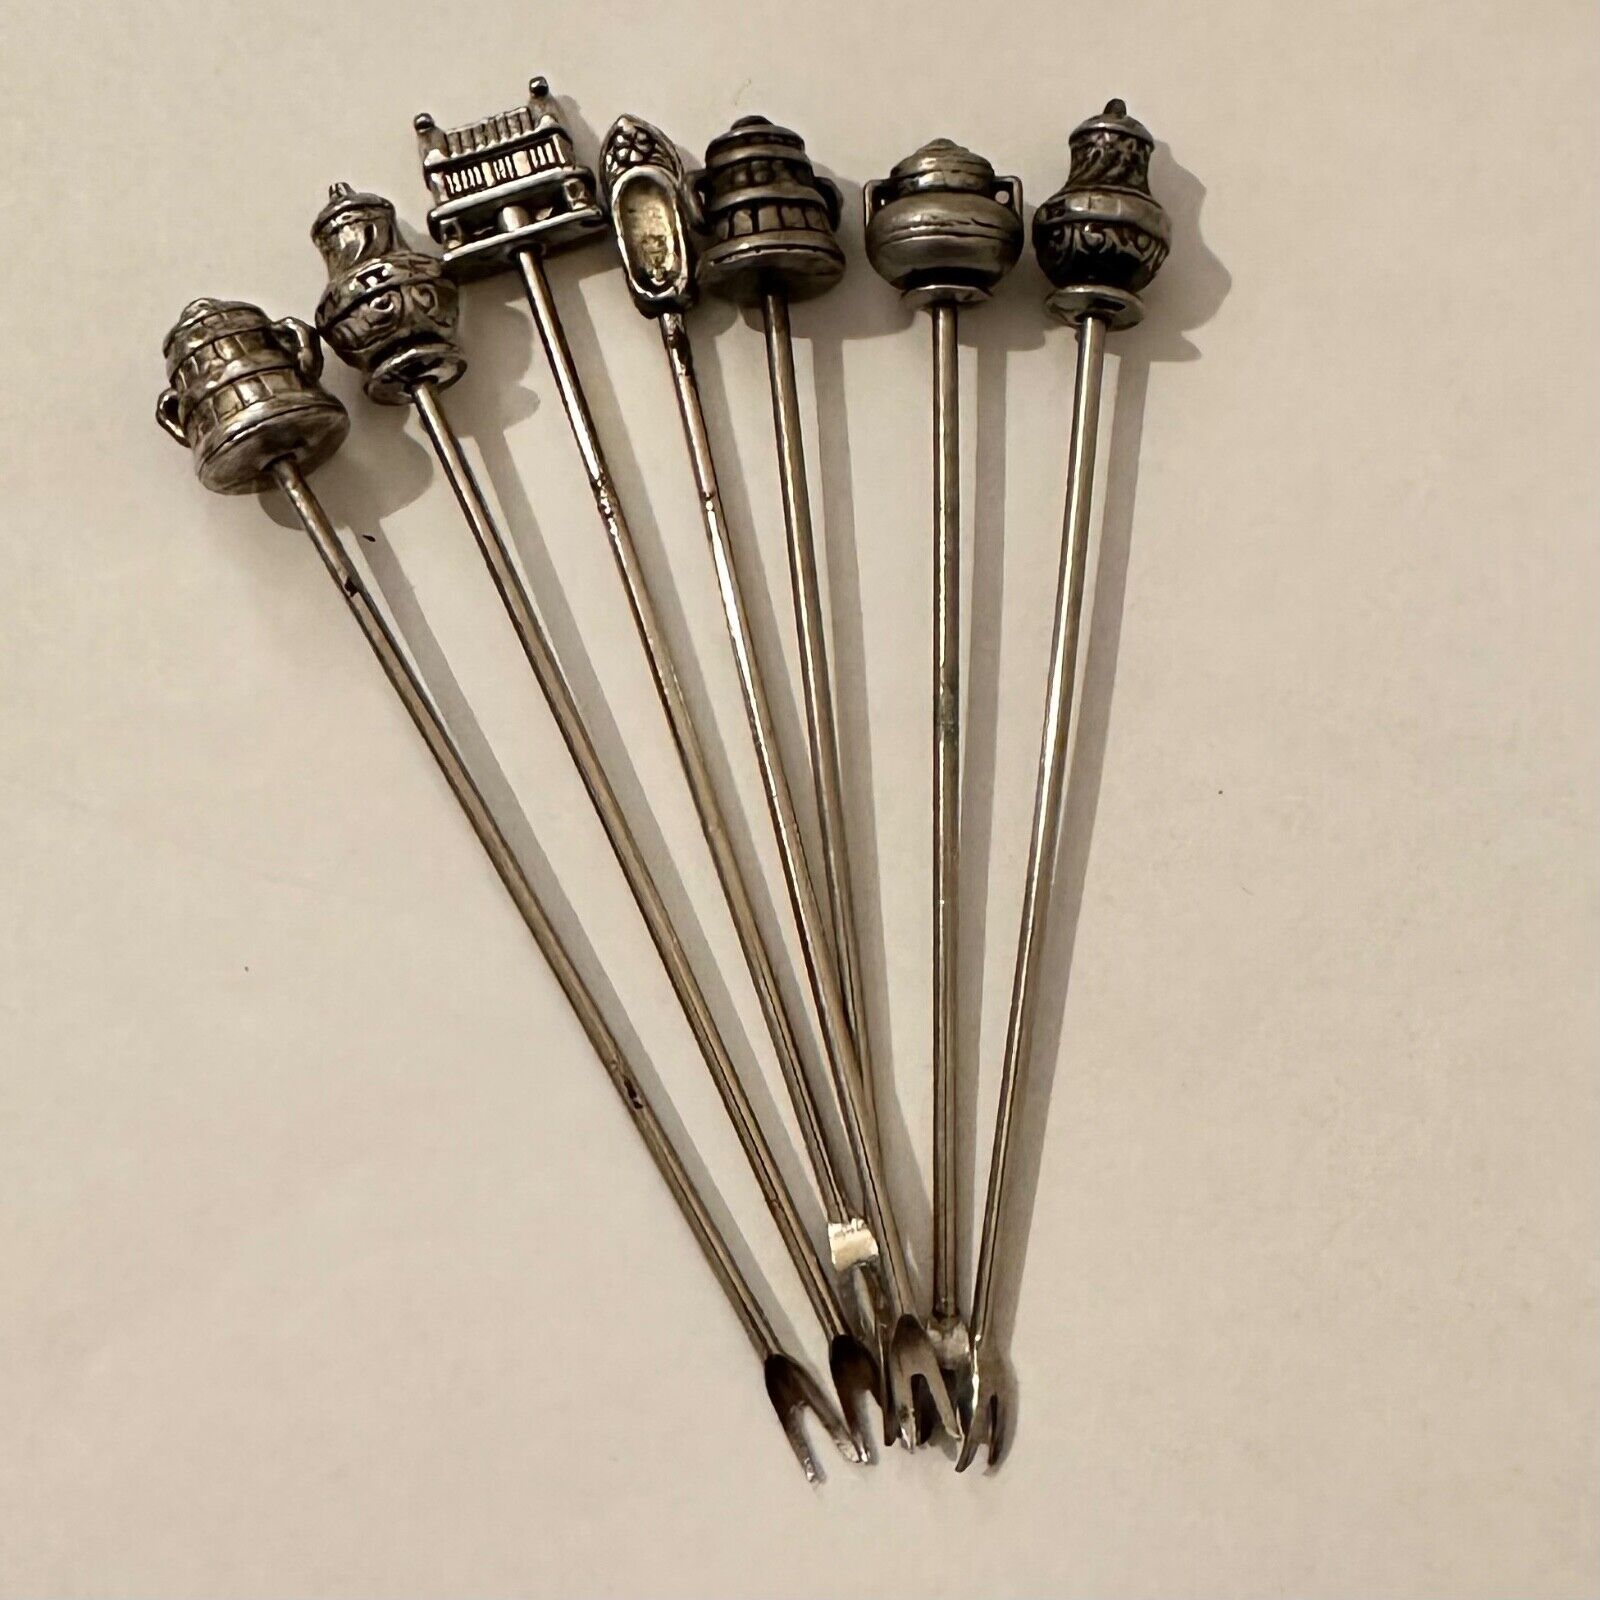 Vintage Metal Silver tone Appetizer Forks / Picks